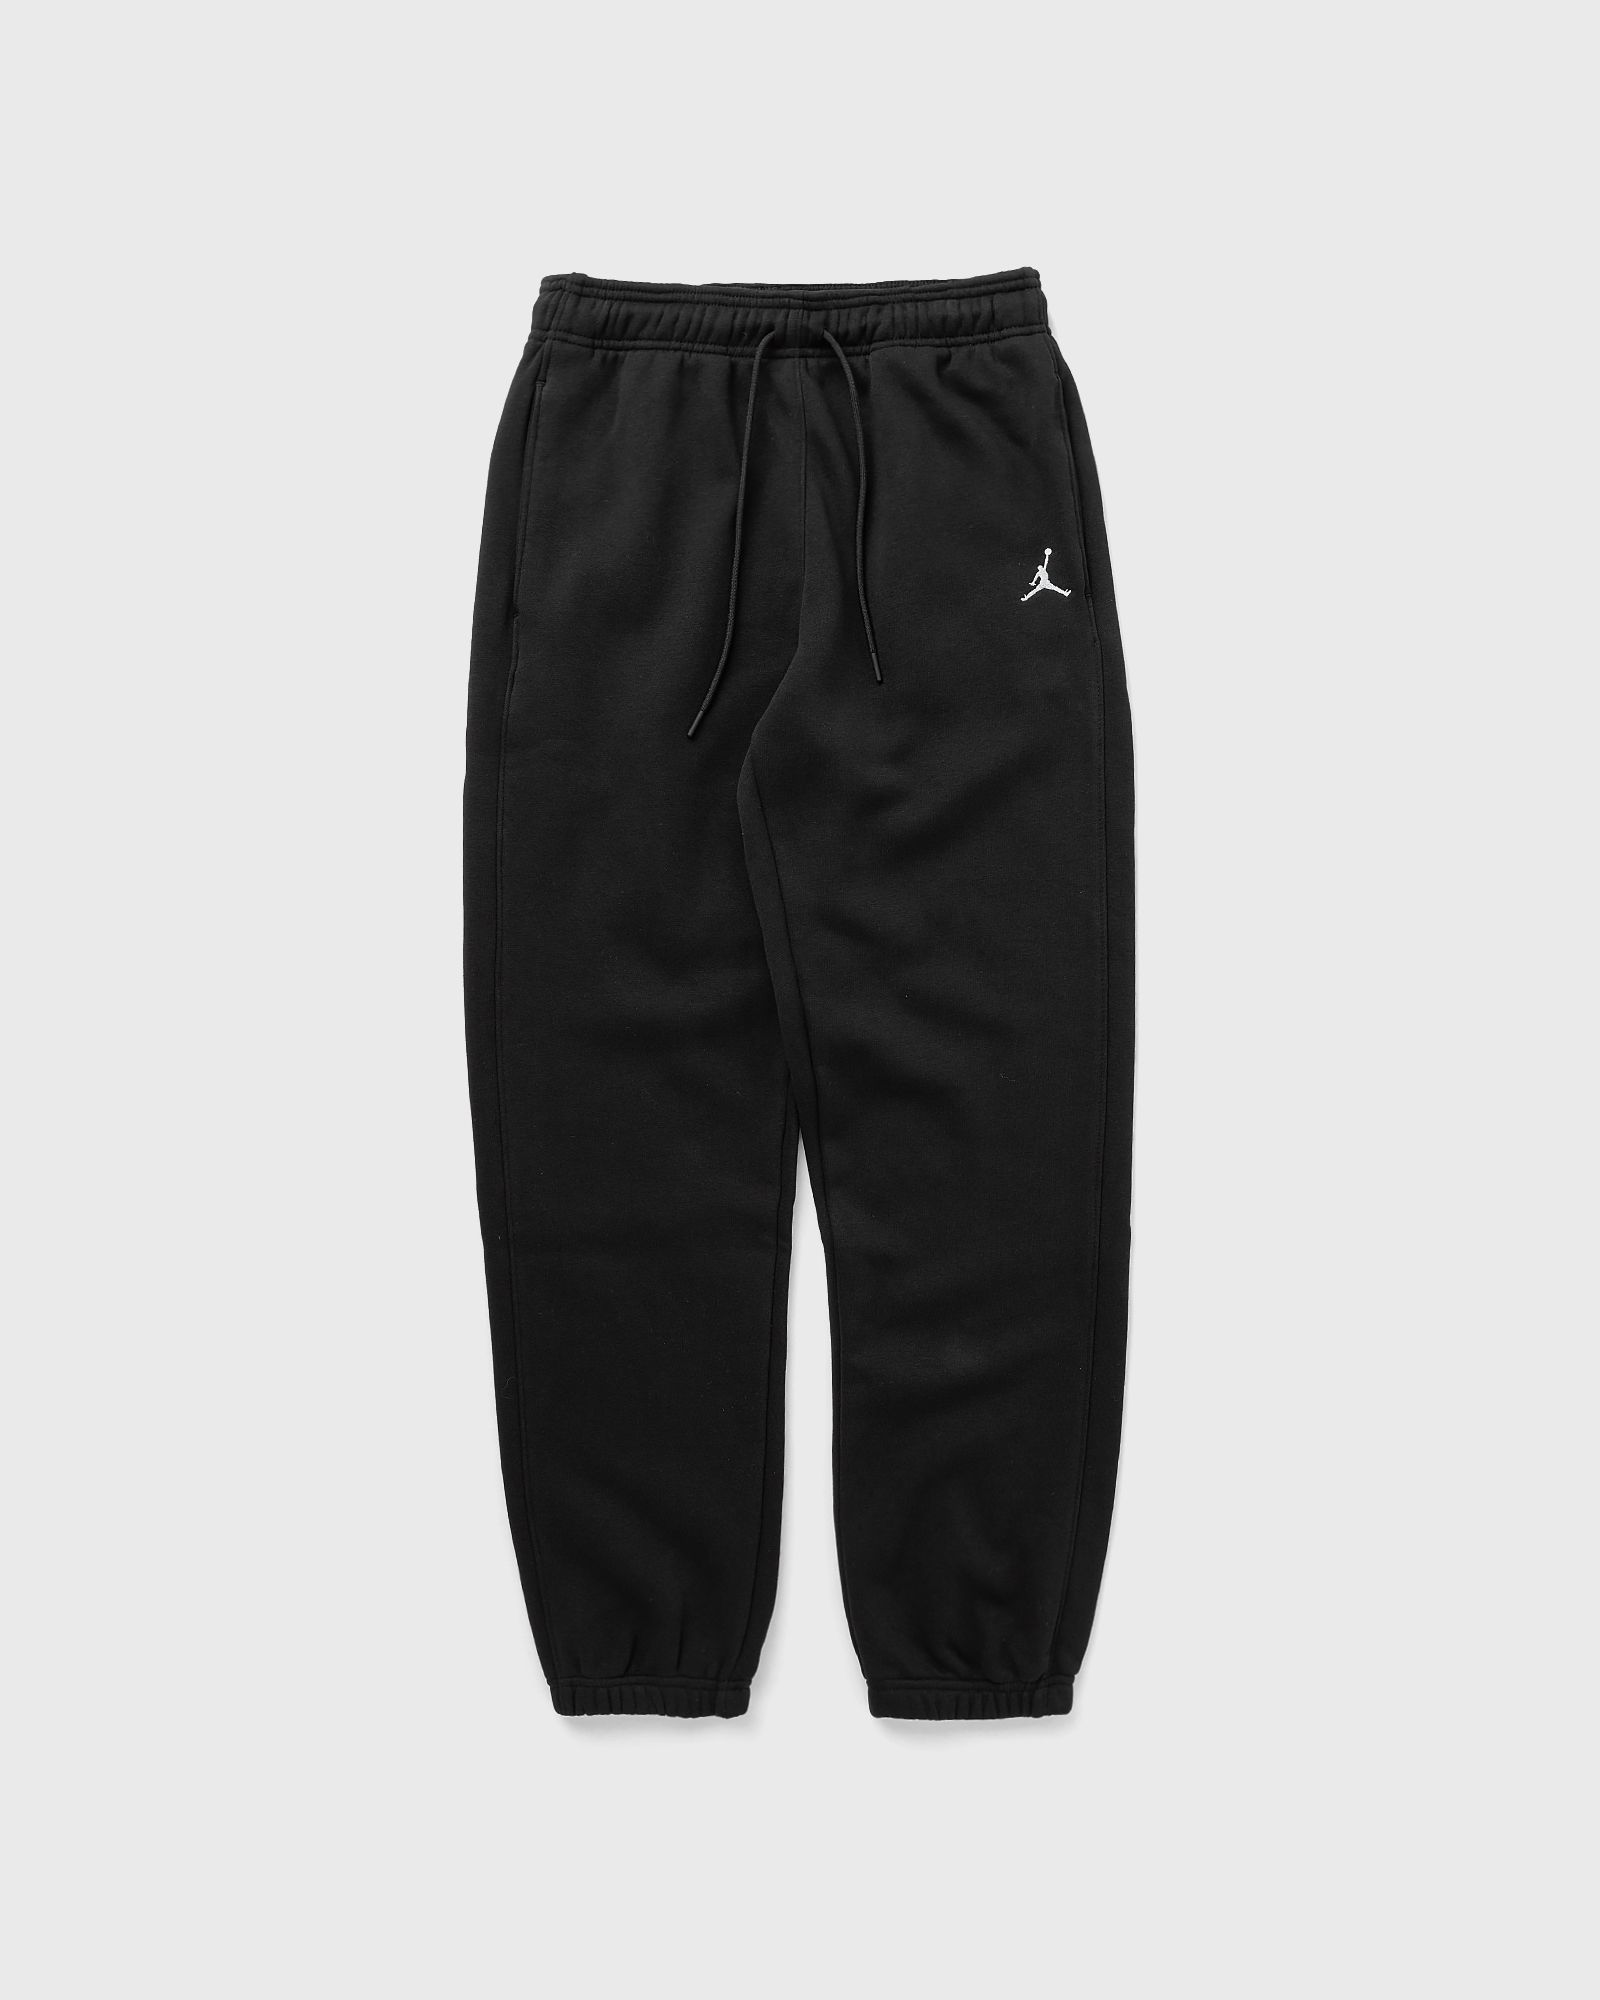 Jordan - brooklyn fleece pant women sweatpants black in größe:l